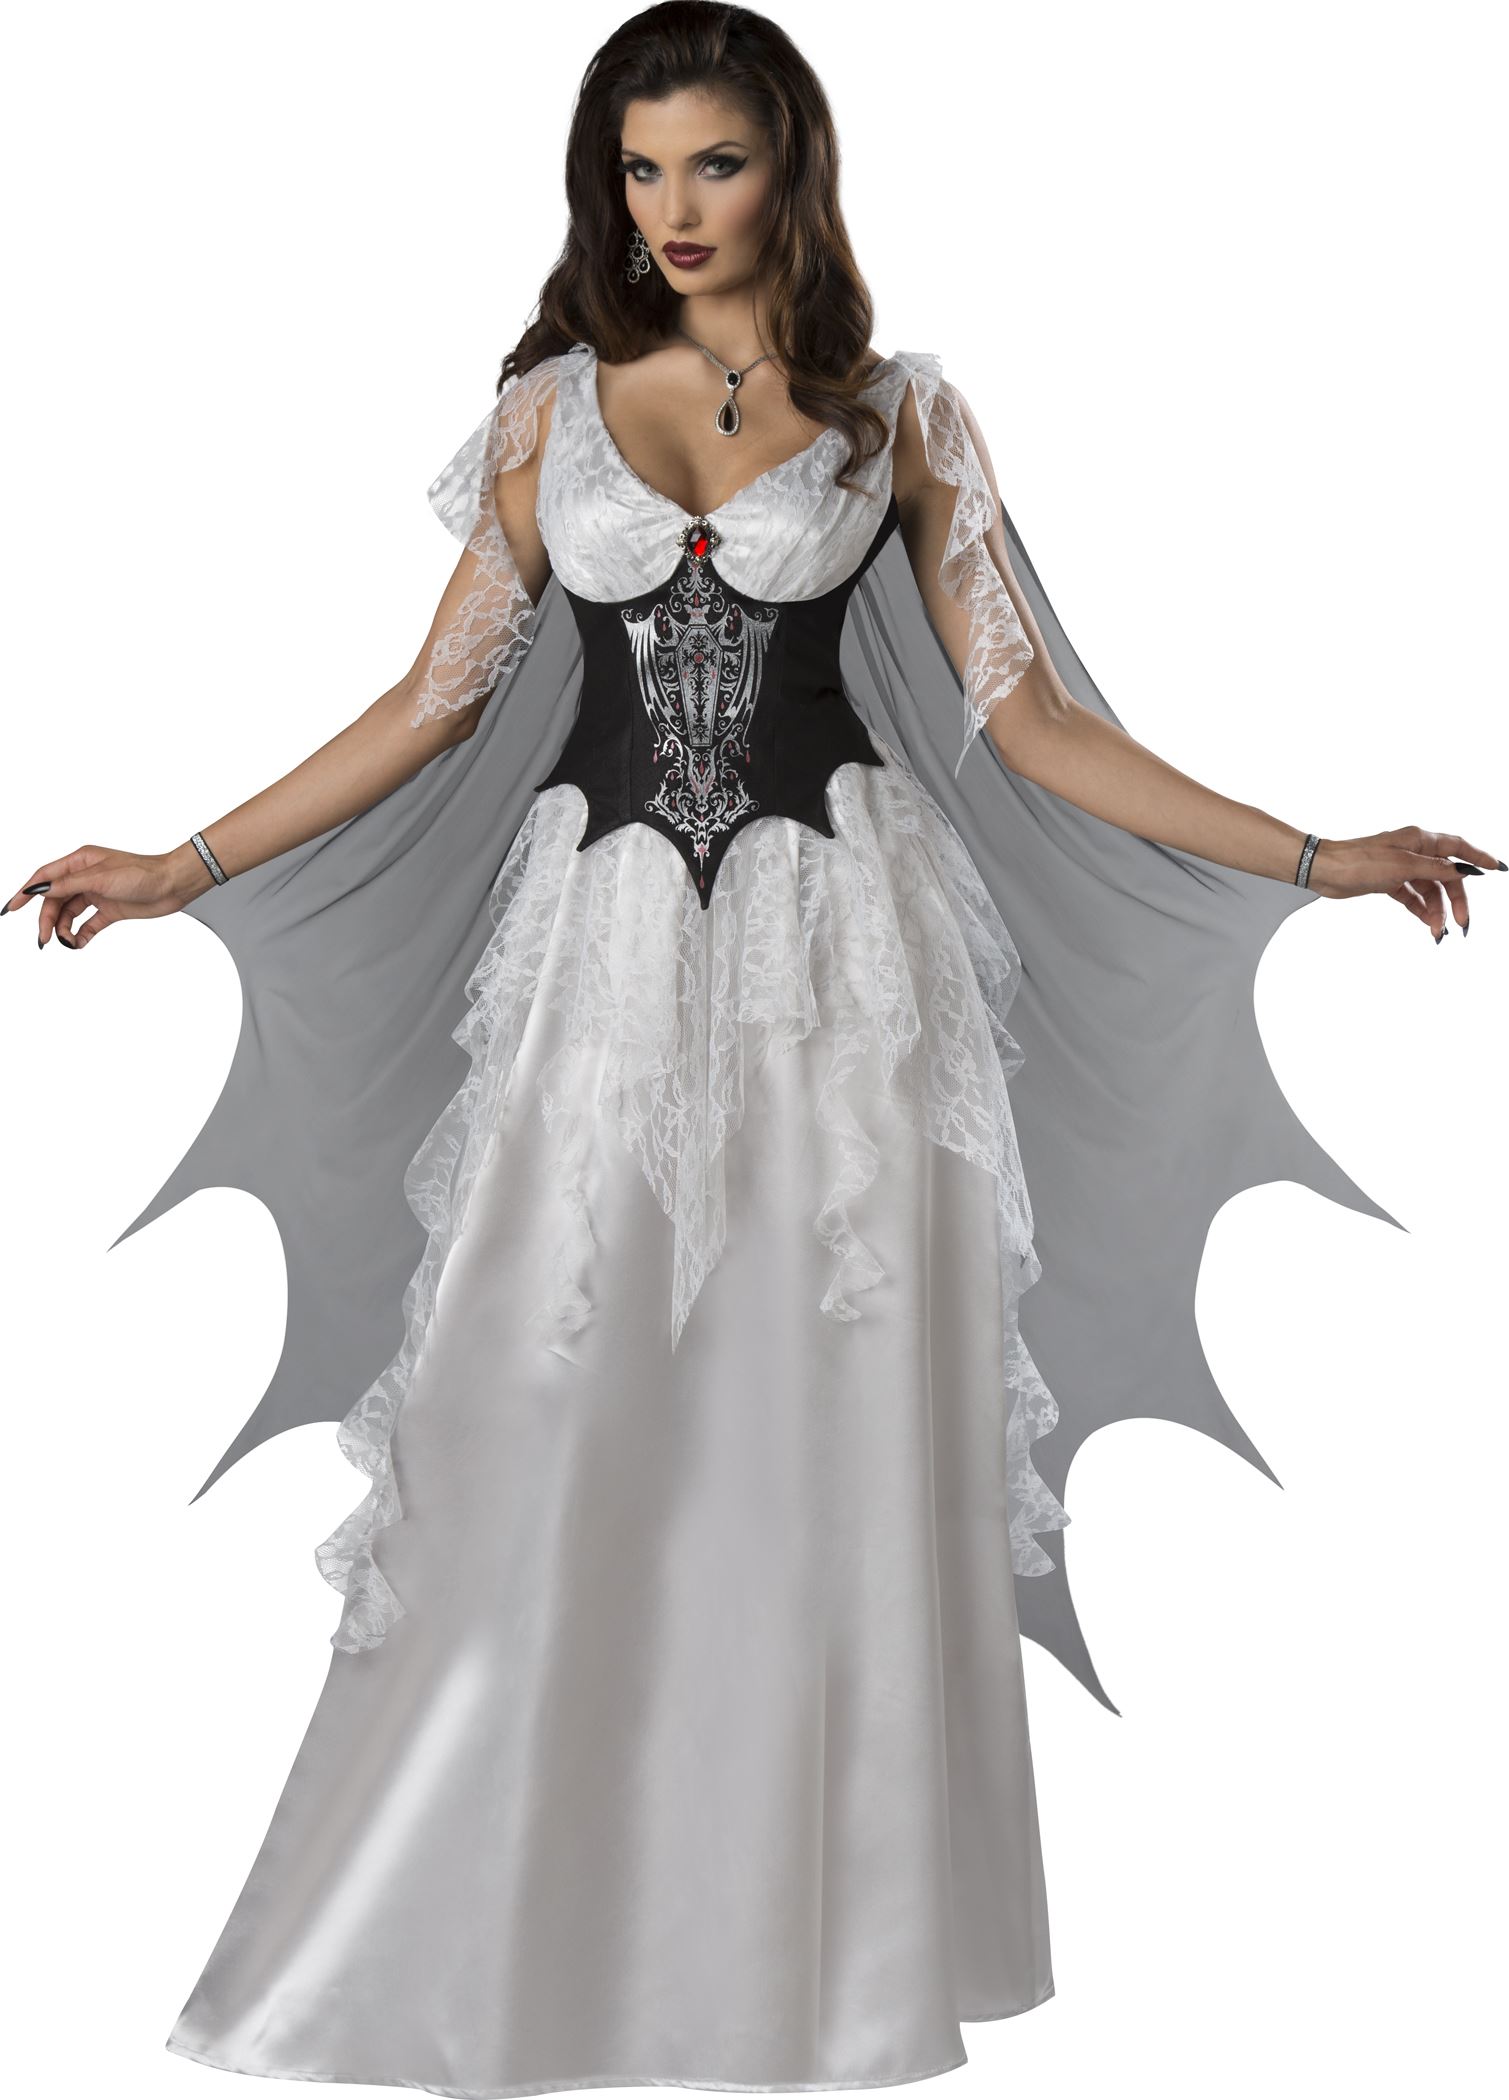 vampire women costumes